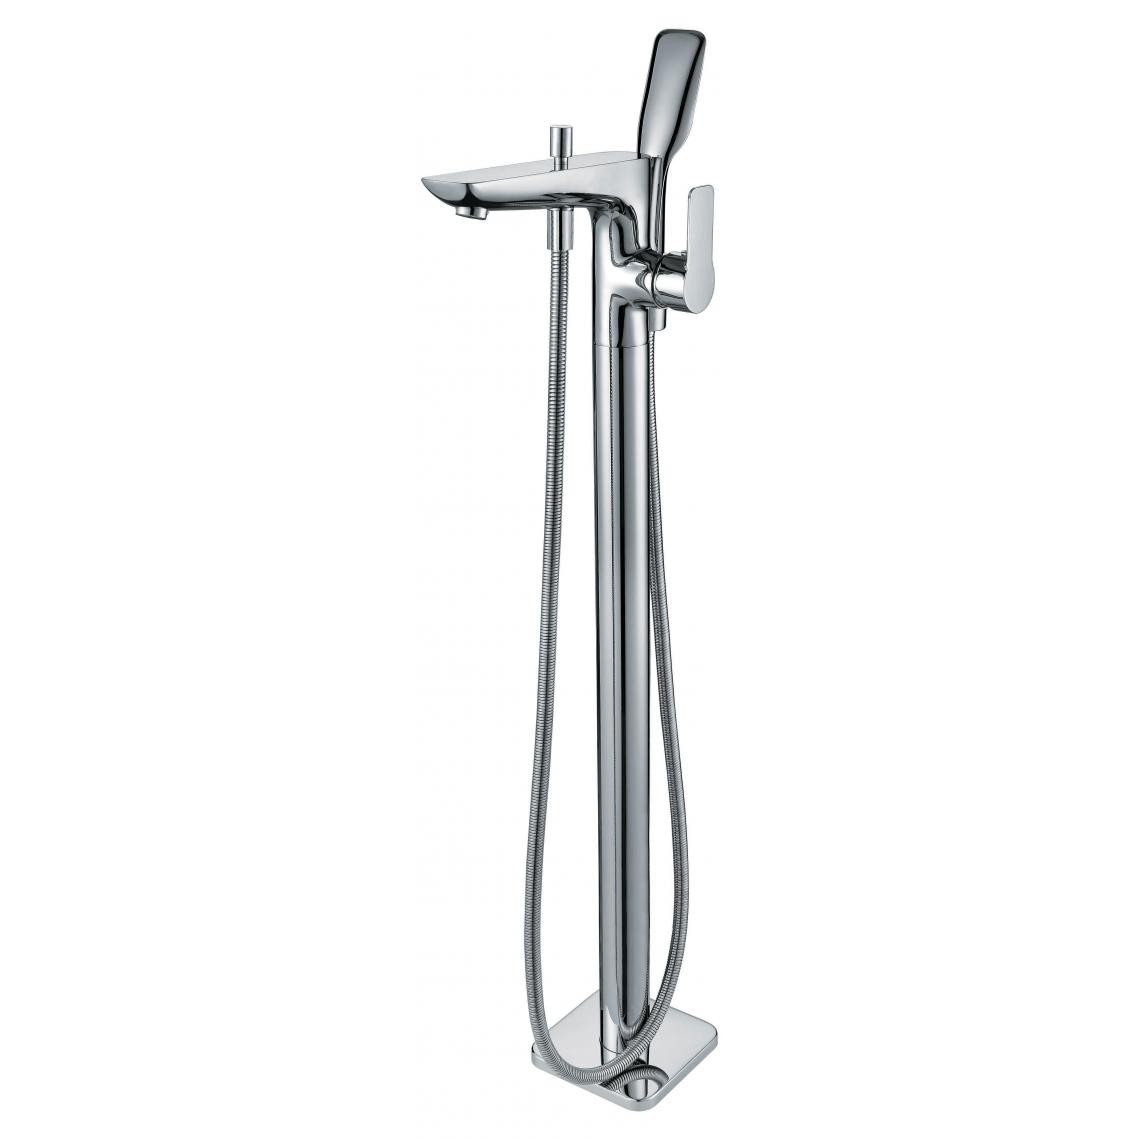 Kroos - Robinet mitigeur salle de bain complet sur pied ilot avec douchette - Mitigeur douche